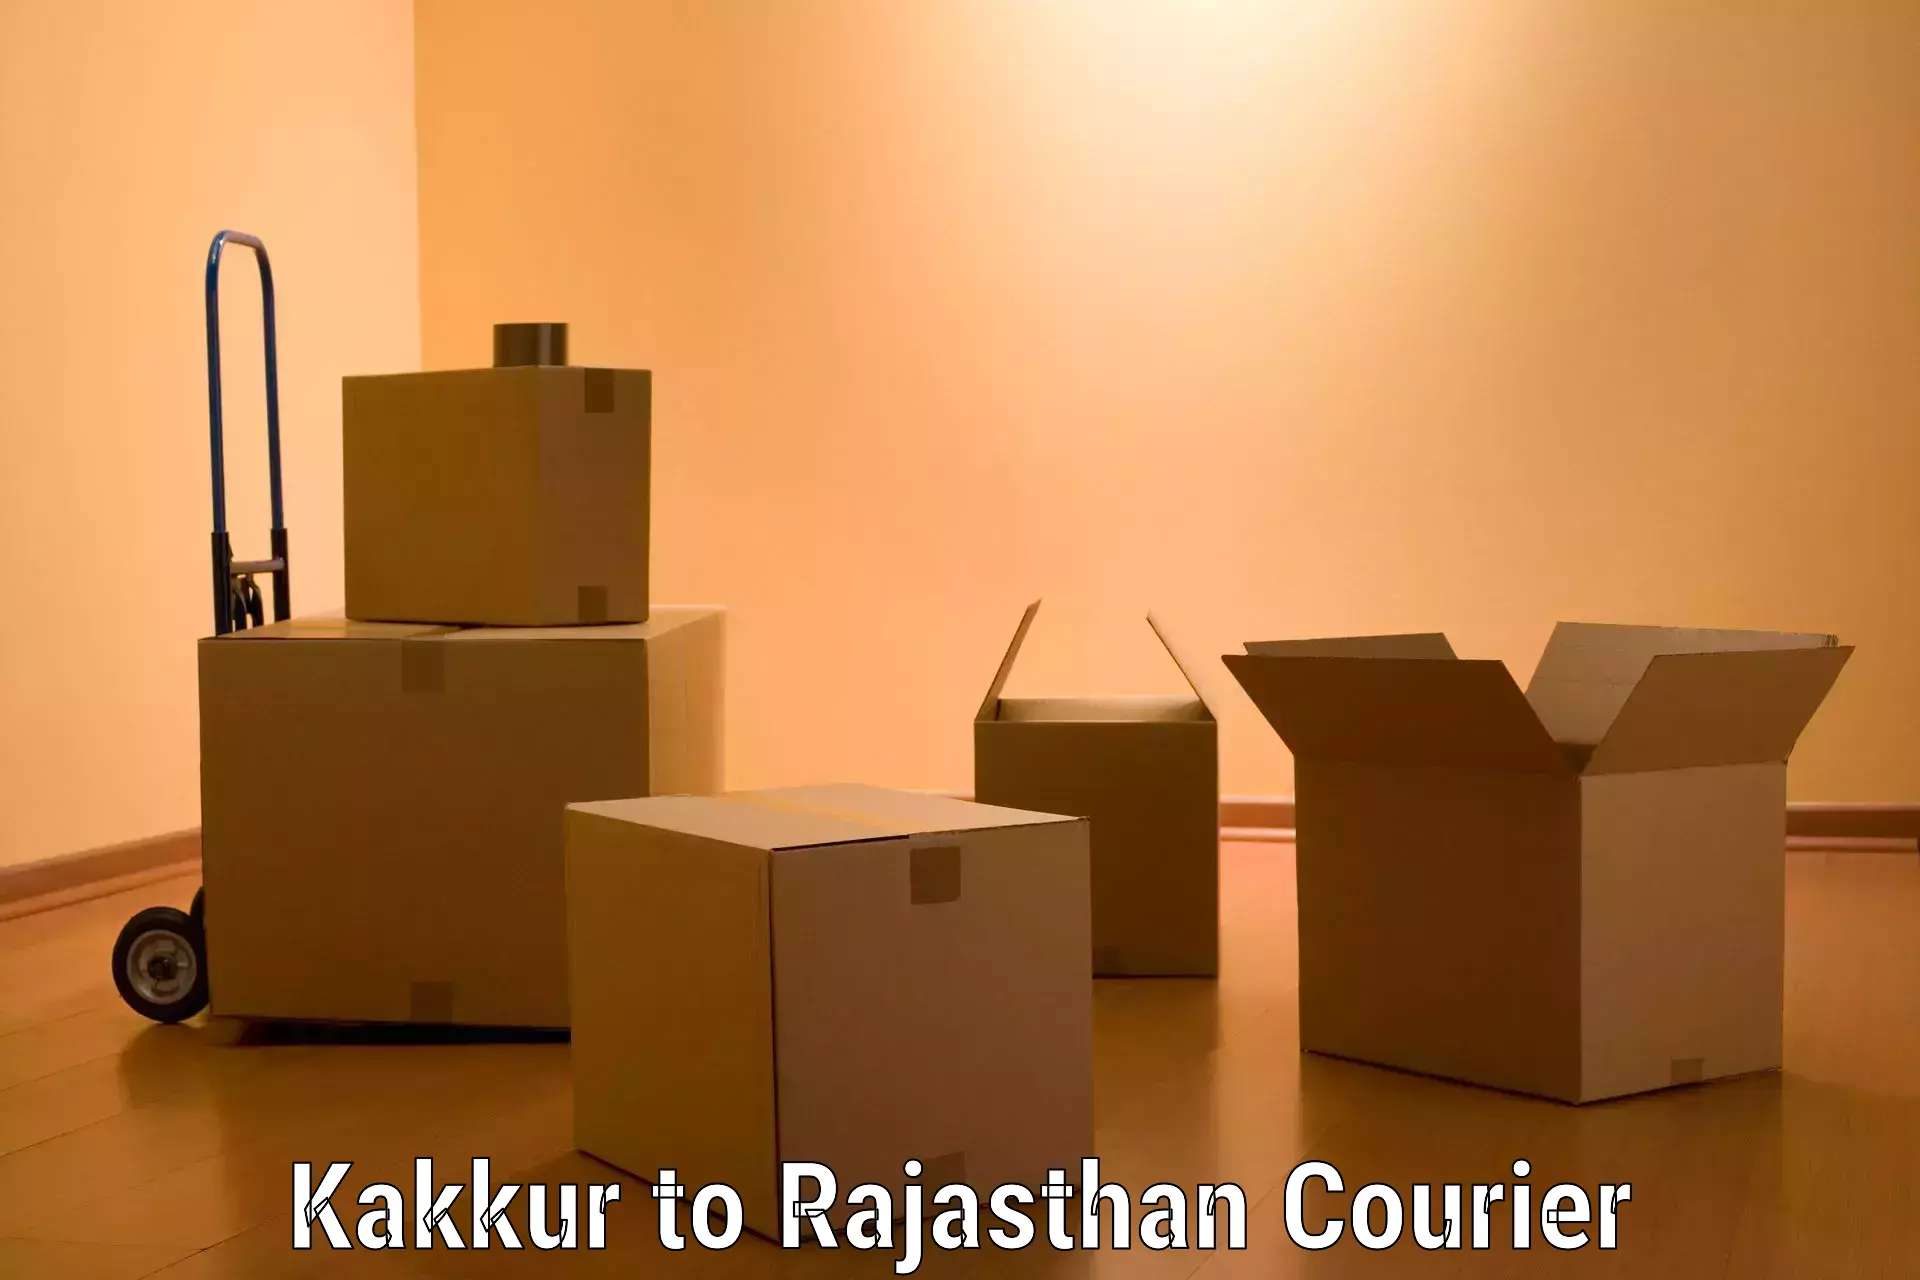 Furniture moving specialists Kakkur to Sri Vijaynagar